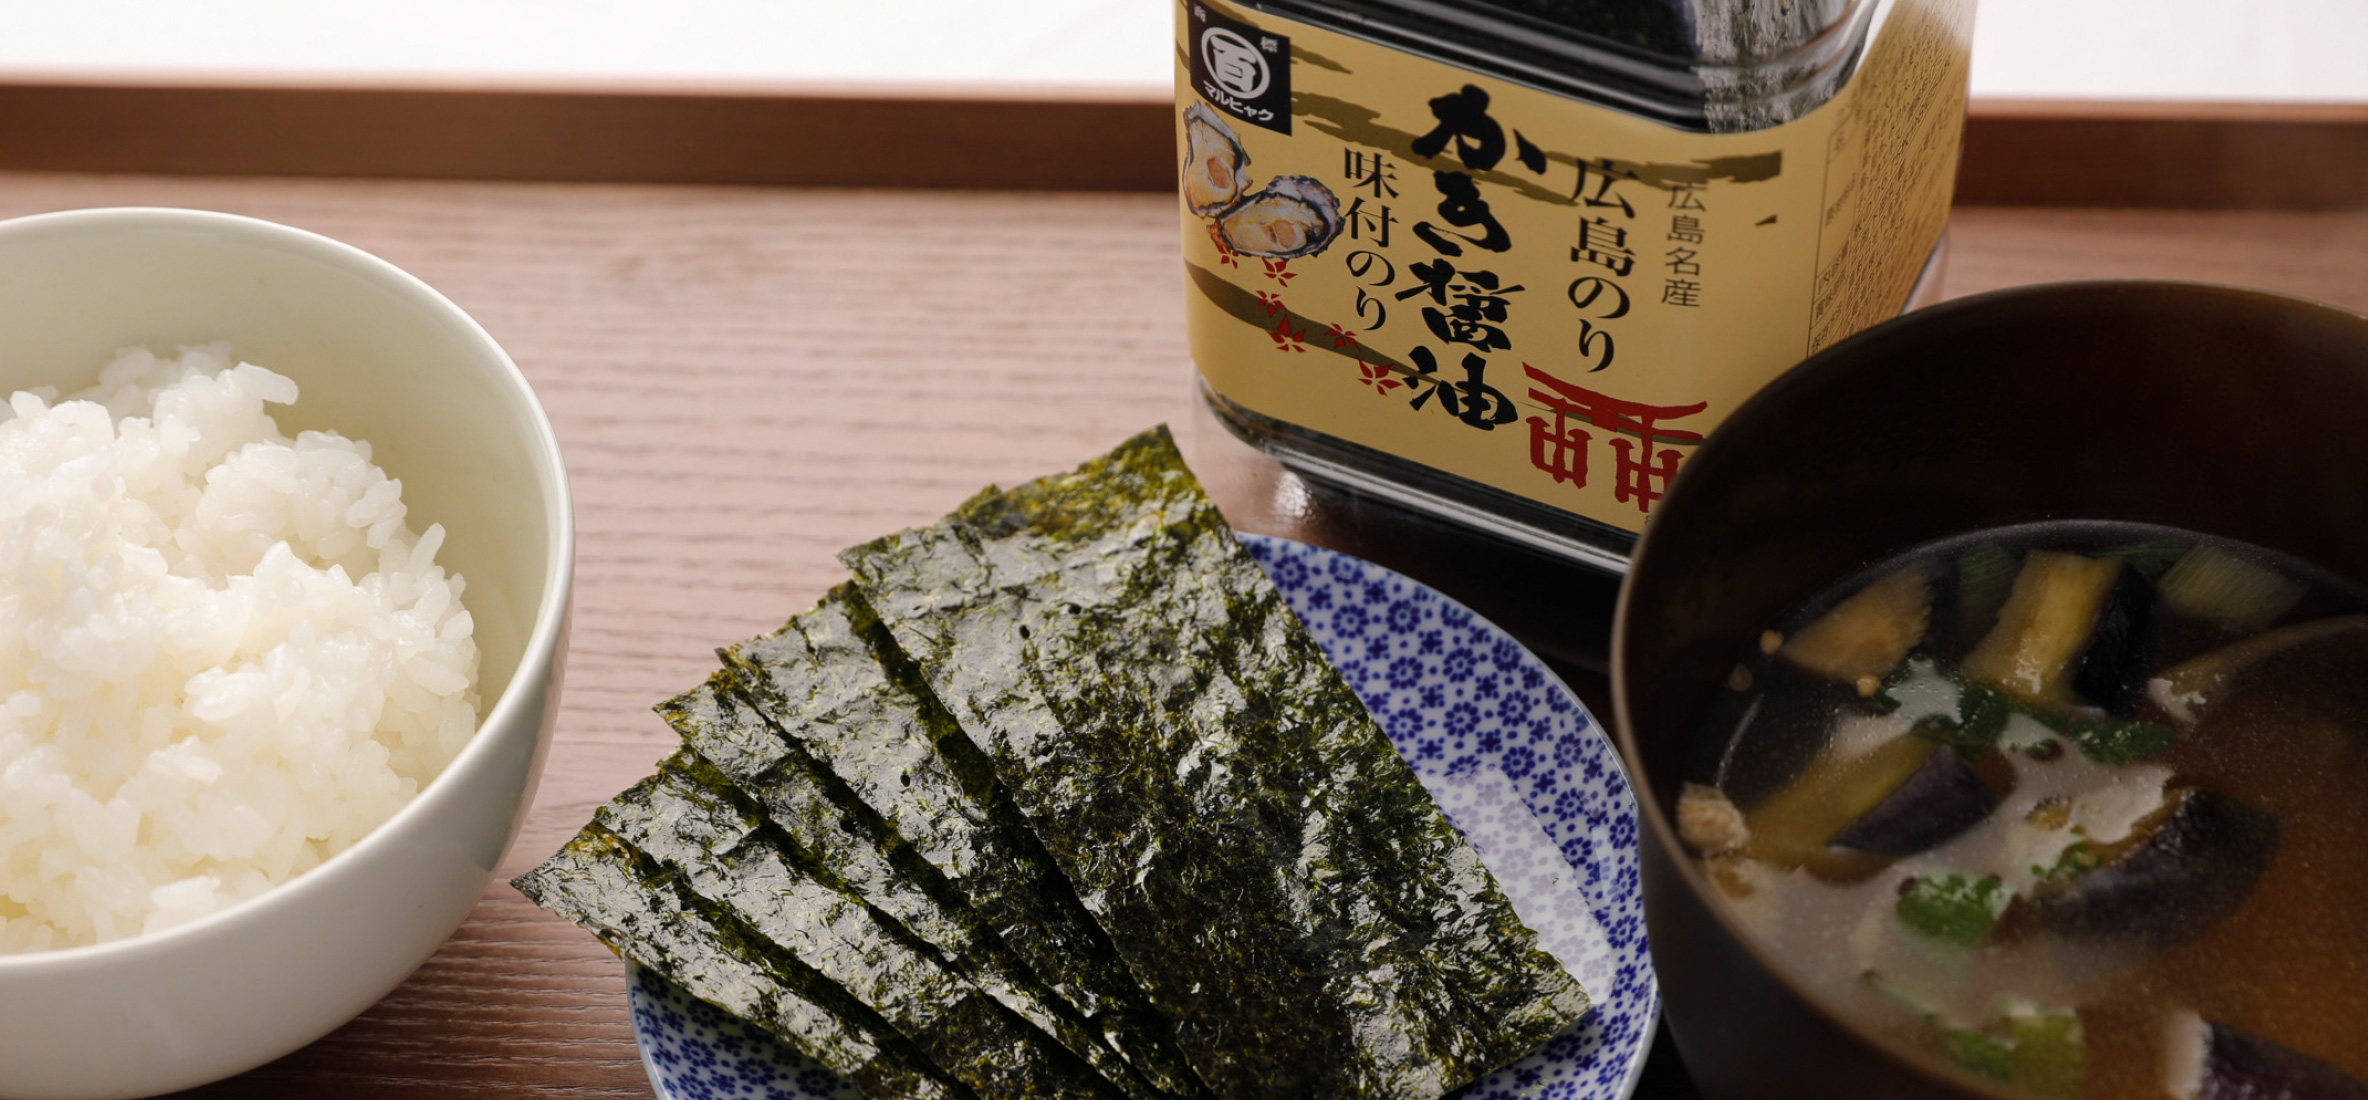 かき醤油味付けのり の広島海苔株式会社